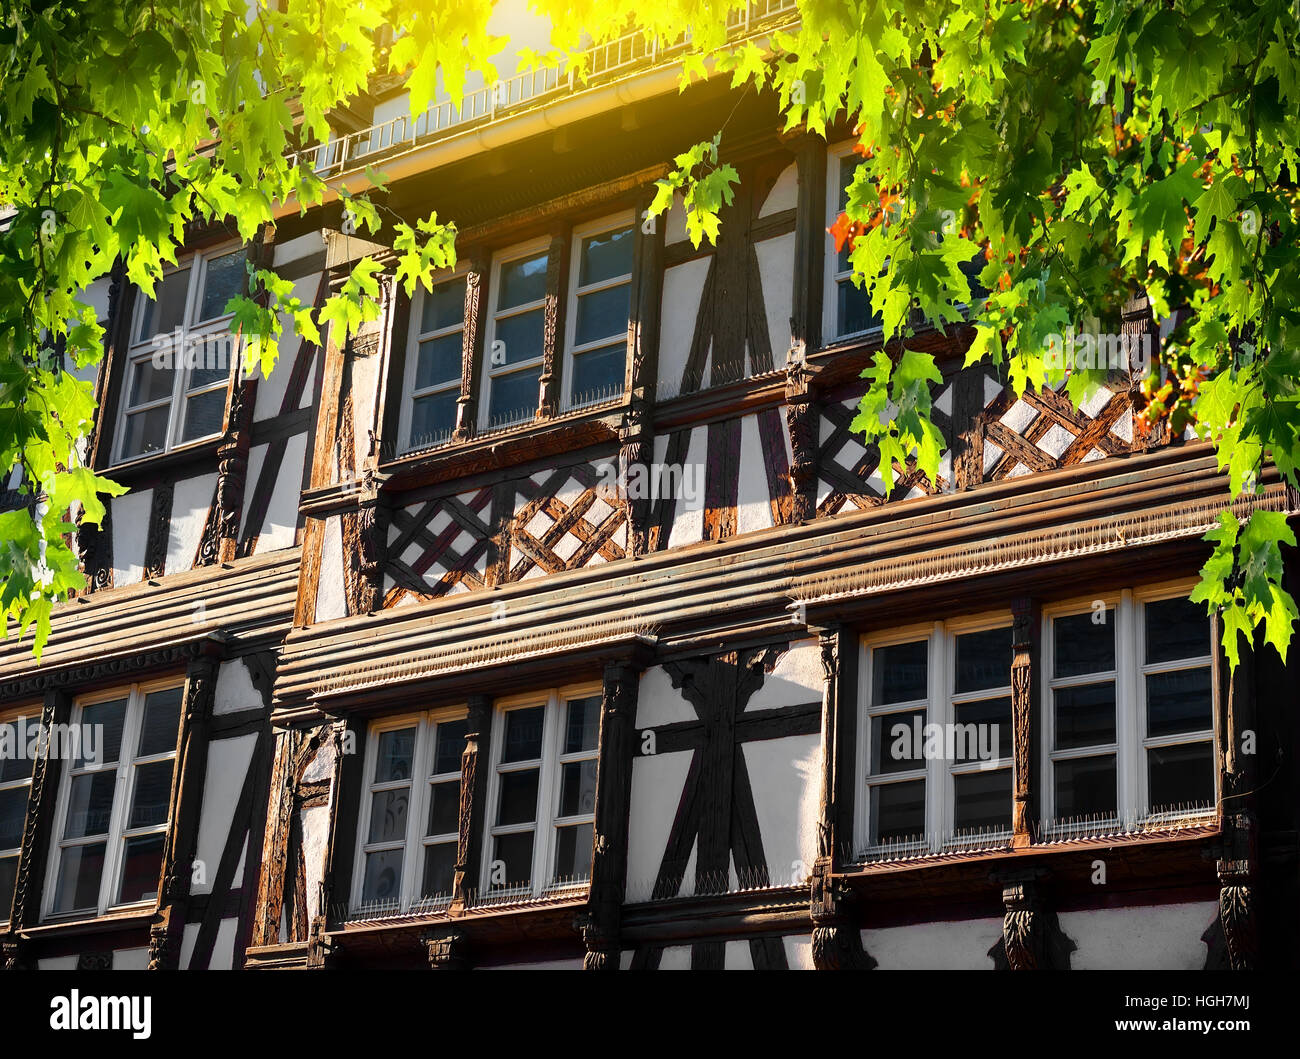 Historique La rue avec maisons à colombages de la Petite France à Strasbourg, France Banque D'Images